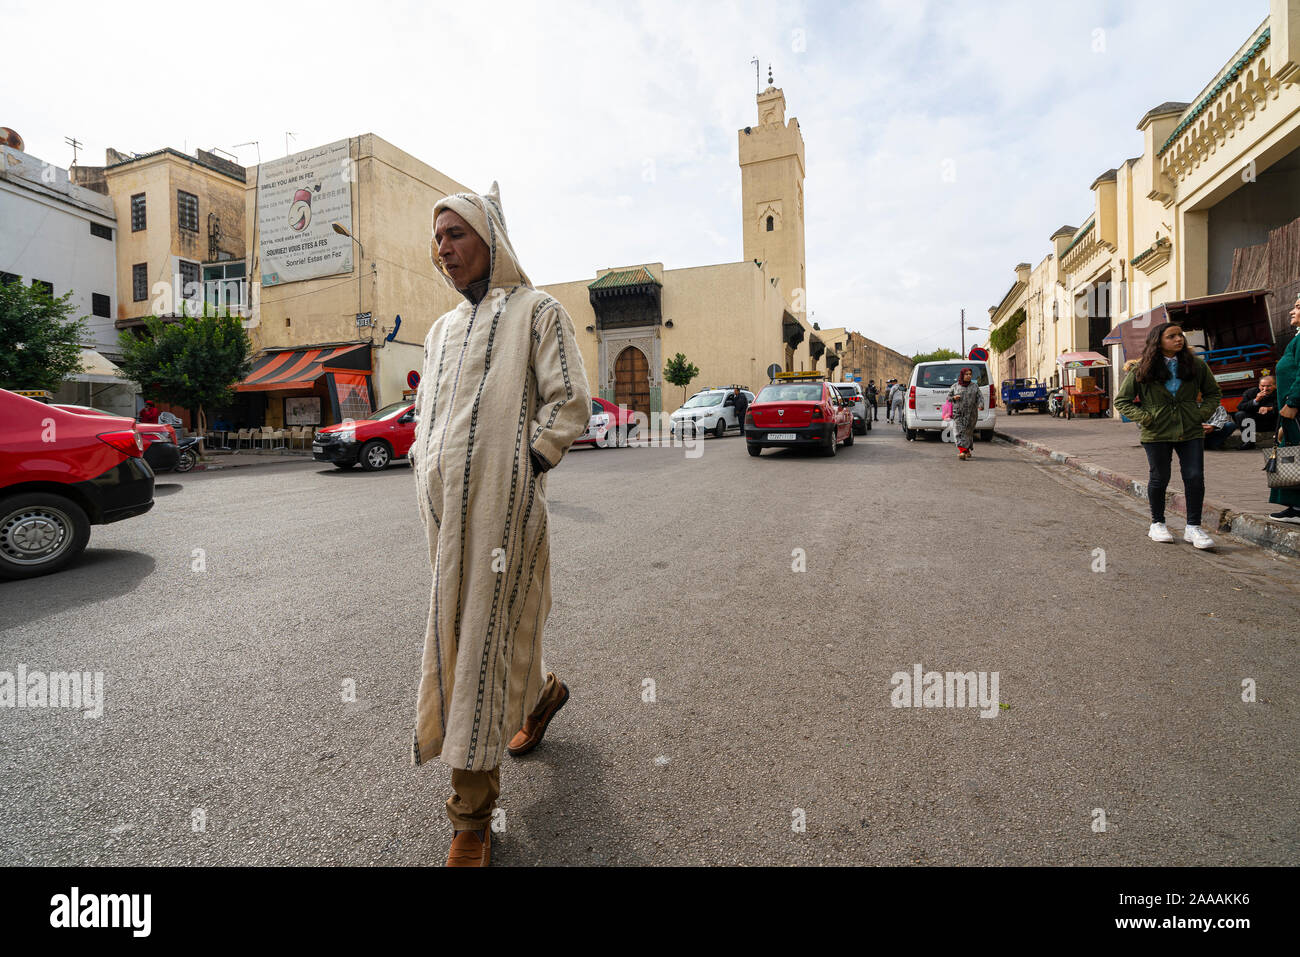 Fes, Maroc. Le 9 novembre 2019. un homme avec une robe traditionnelle marocaine marche dans une rue du centre-ville Banque D'Images